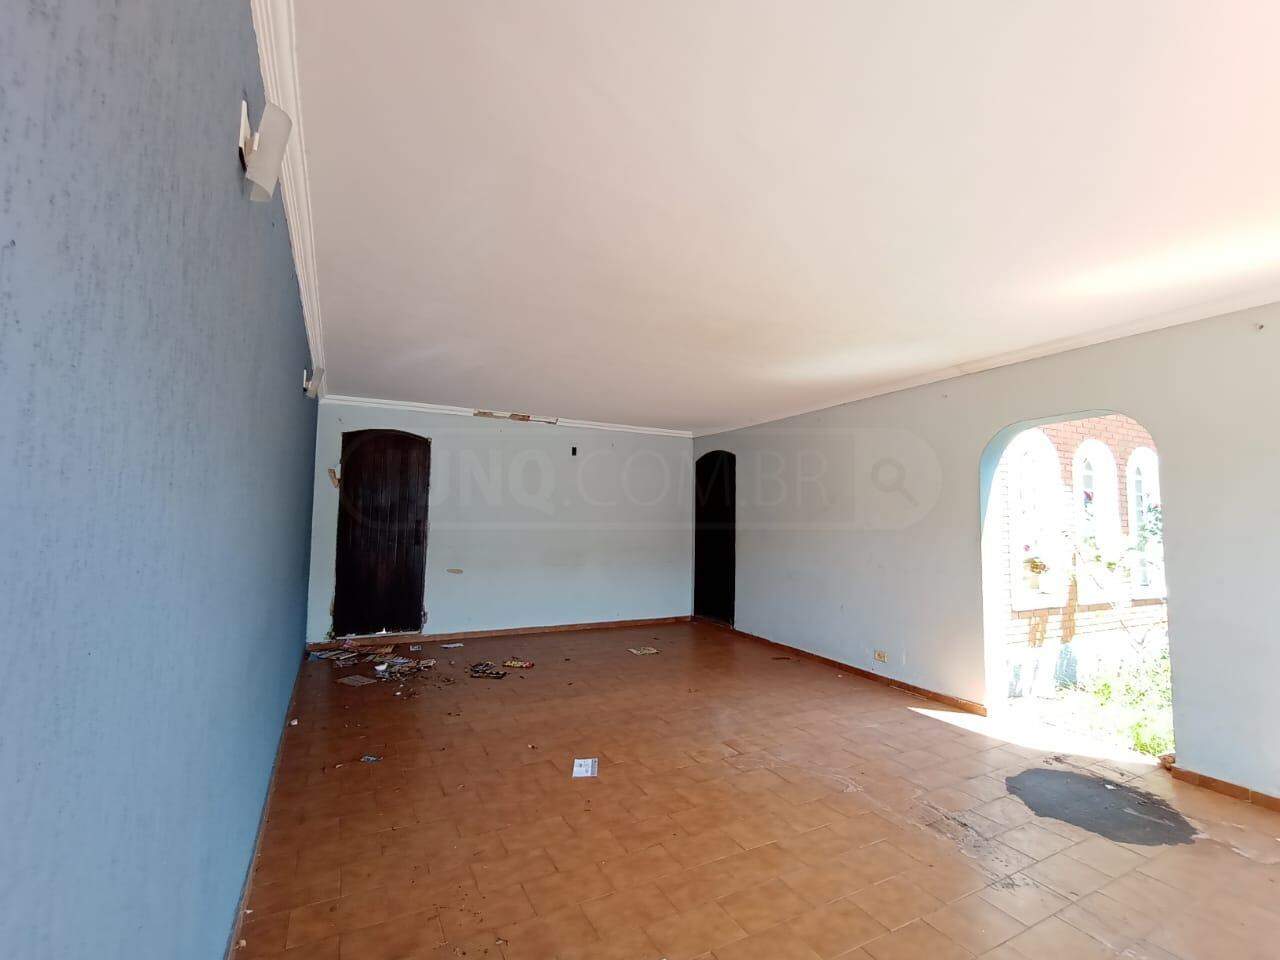 Casa para alugar, 3 quartos, sendo 1 suíte, 2 vagas, no bairro Piracicamirim em Piracicaba - SP